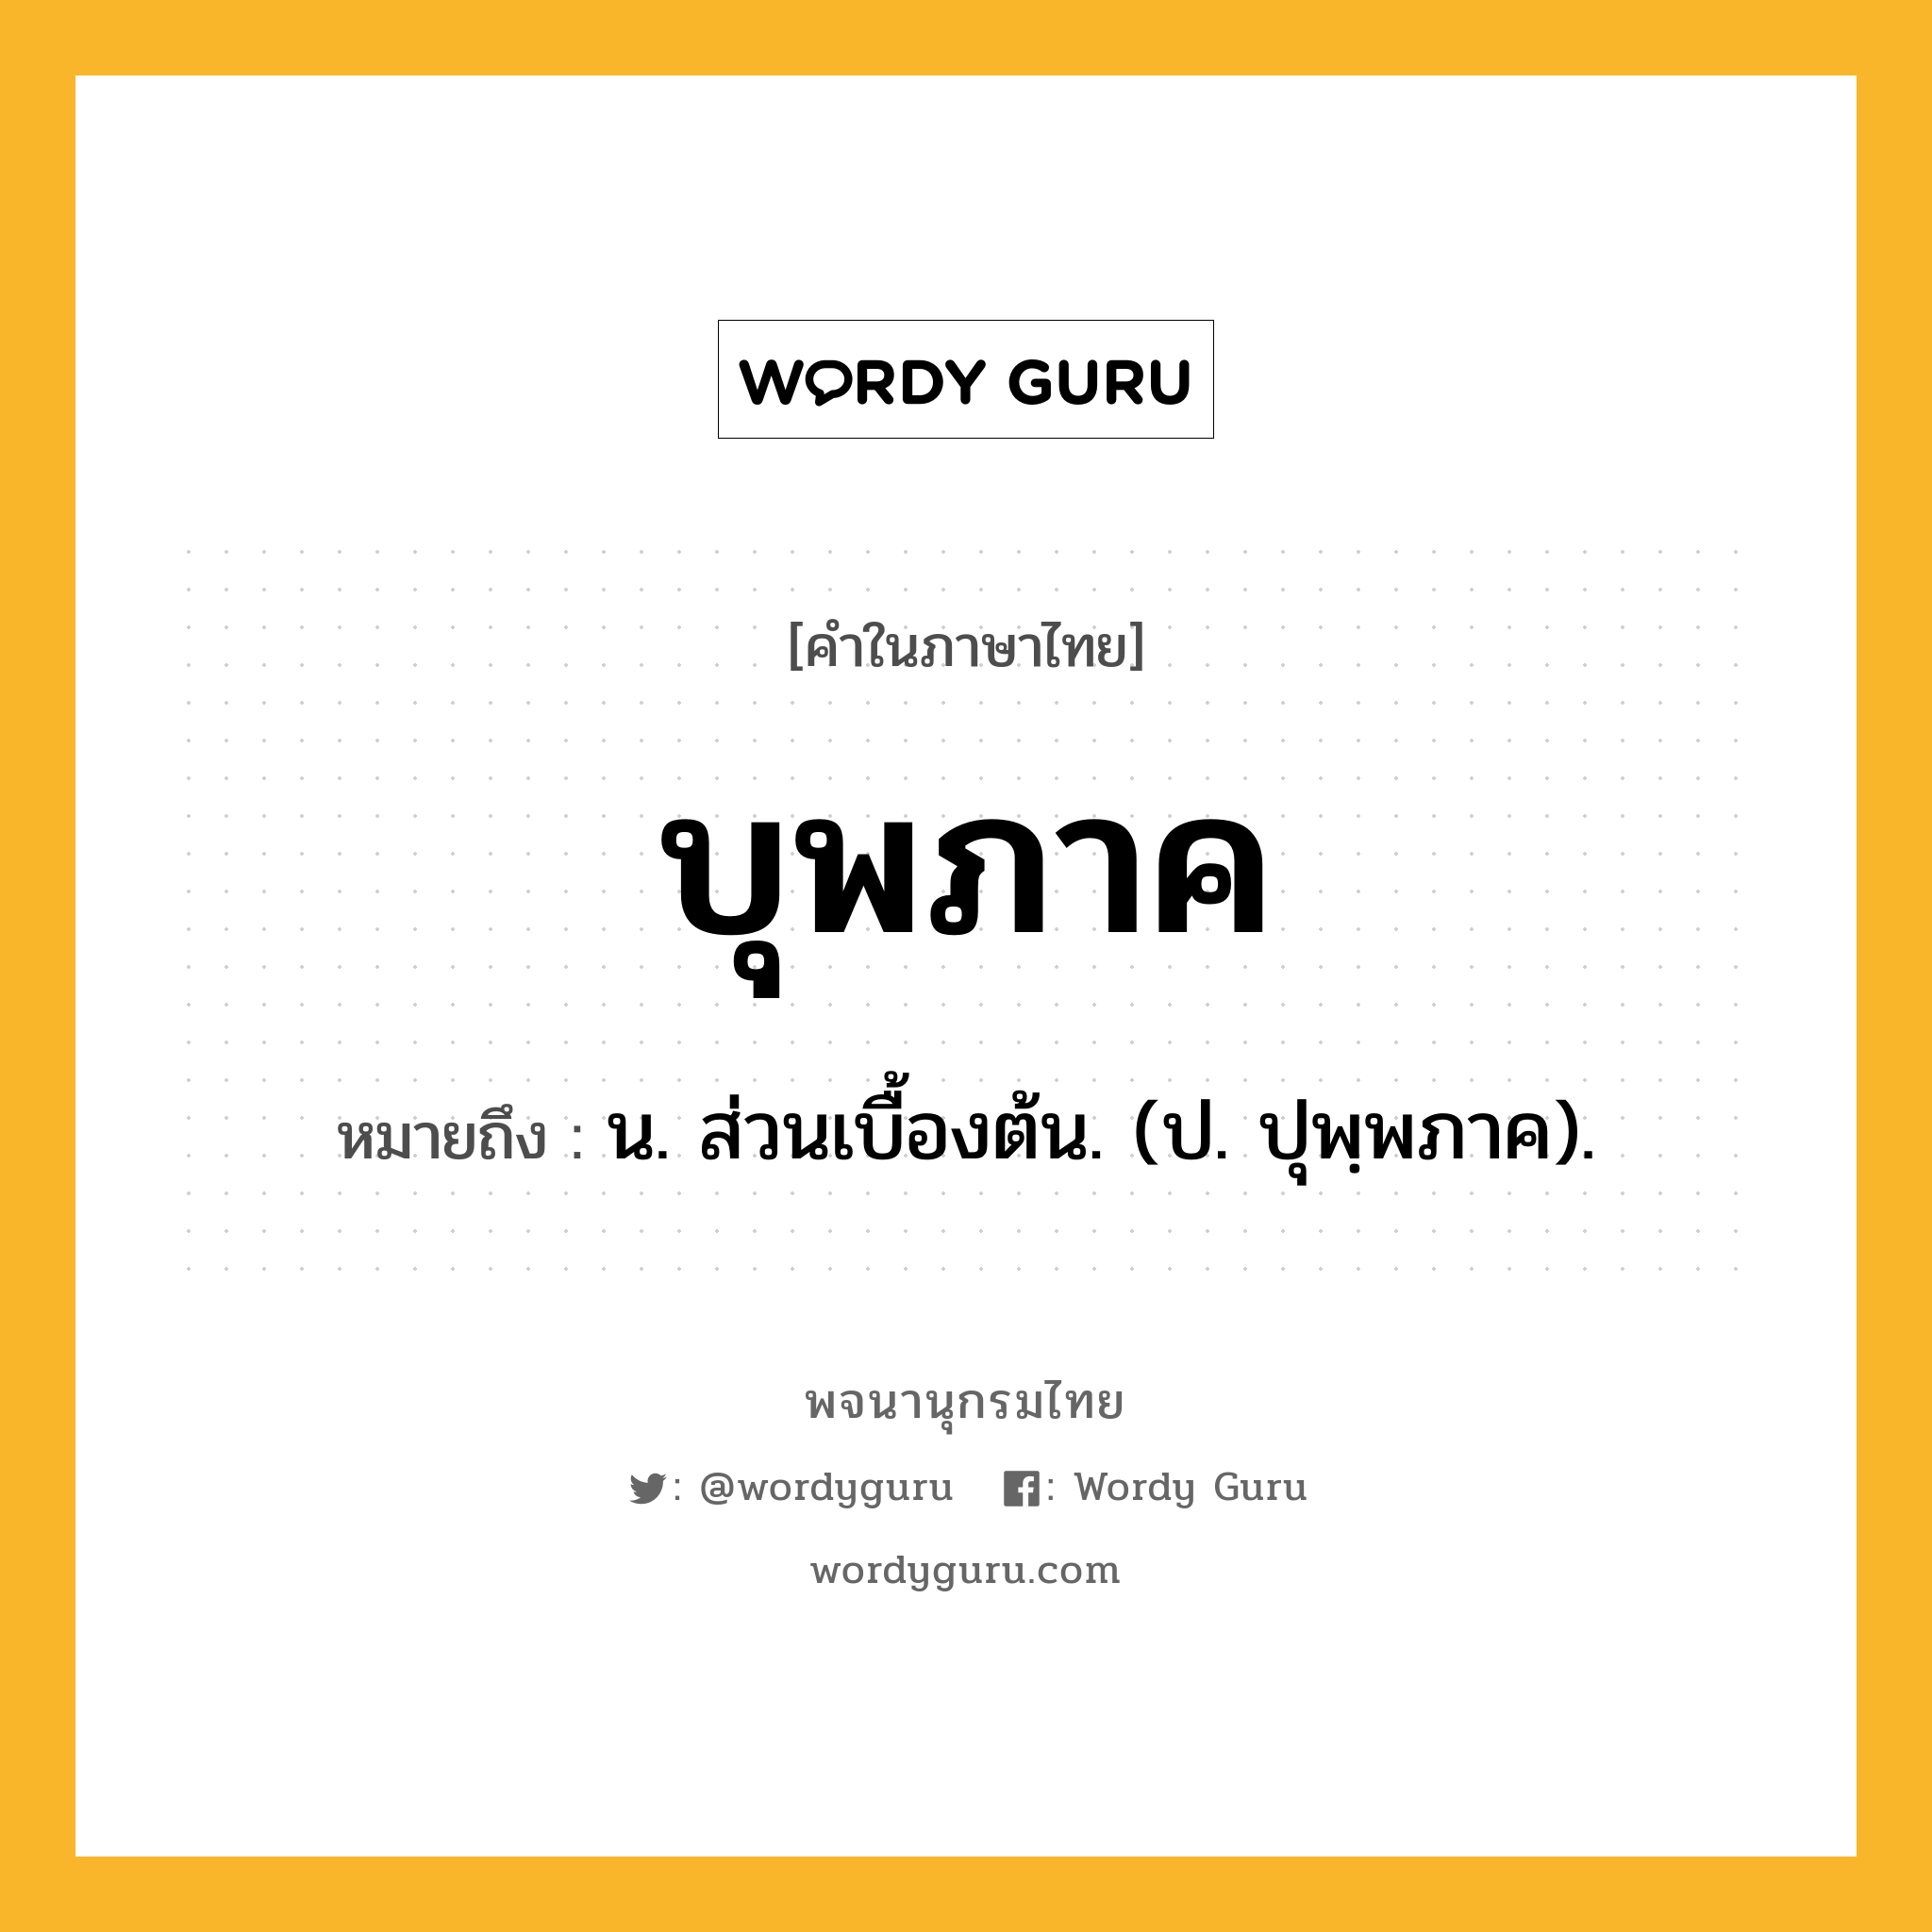 บุพภาค ความหมาย หมายถึงอะไร?, คำในภาษาไทย บุพภาค หมายถึง น. ส่วนเบื้องต้น. (ป. ปุพฺพภาค).